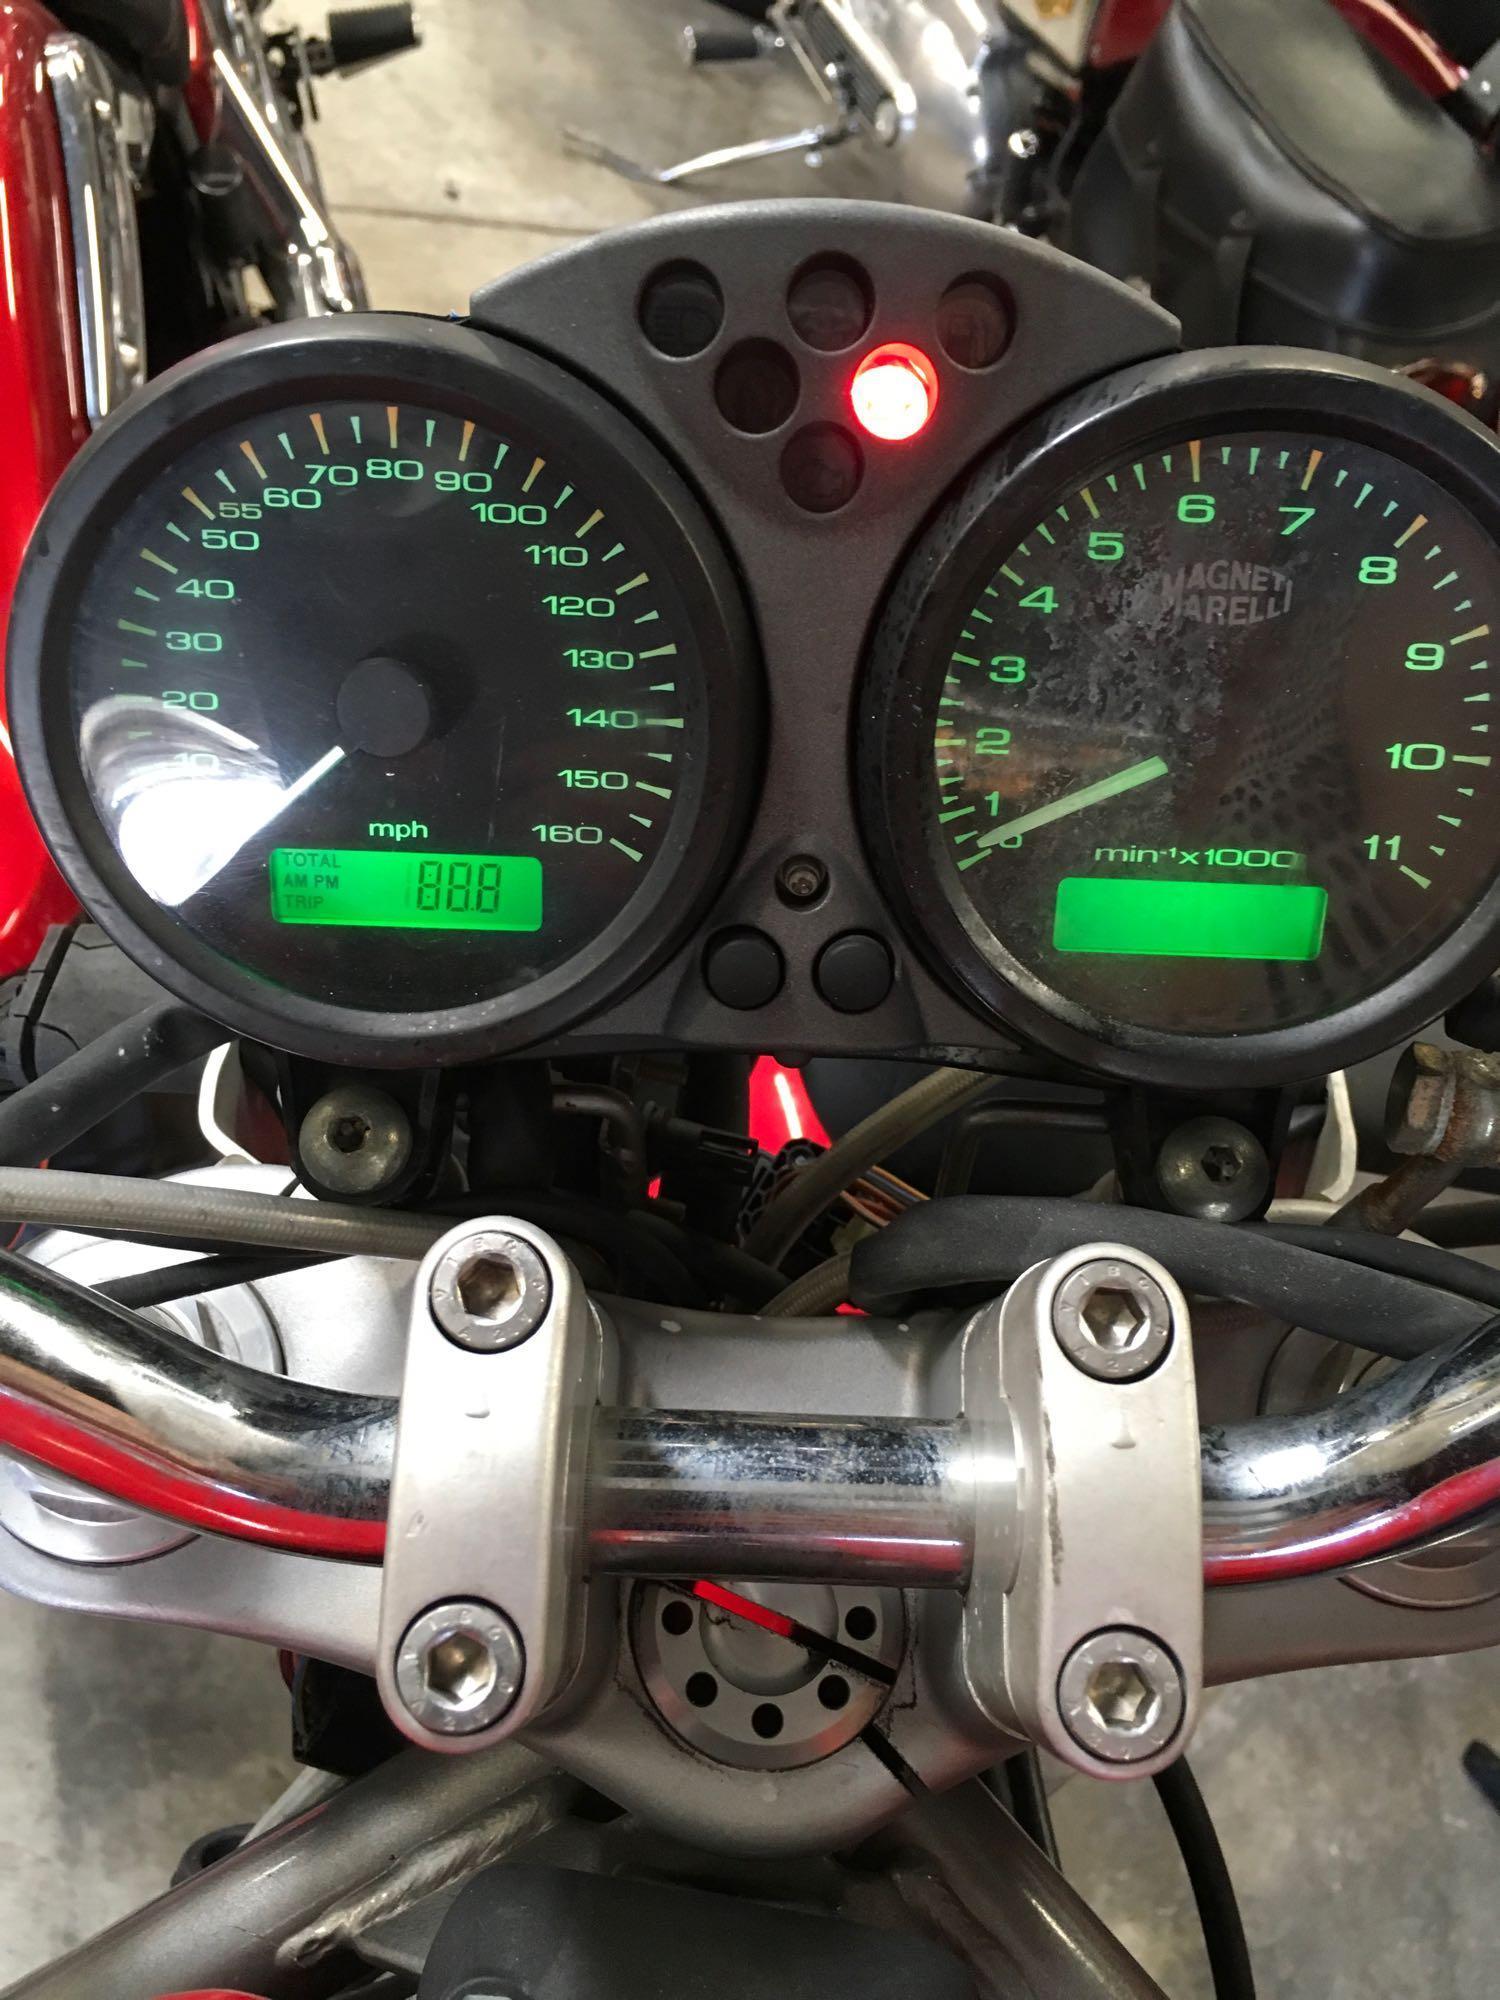 2002 Ducati M900 Motorcycle